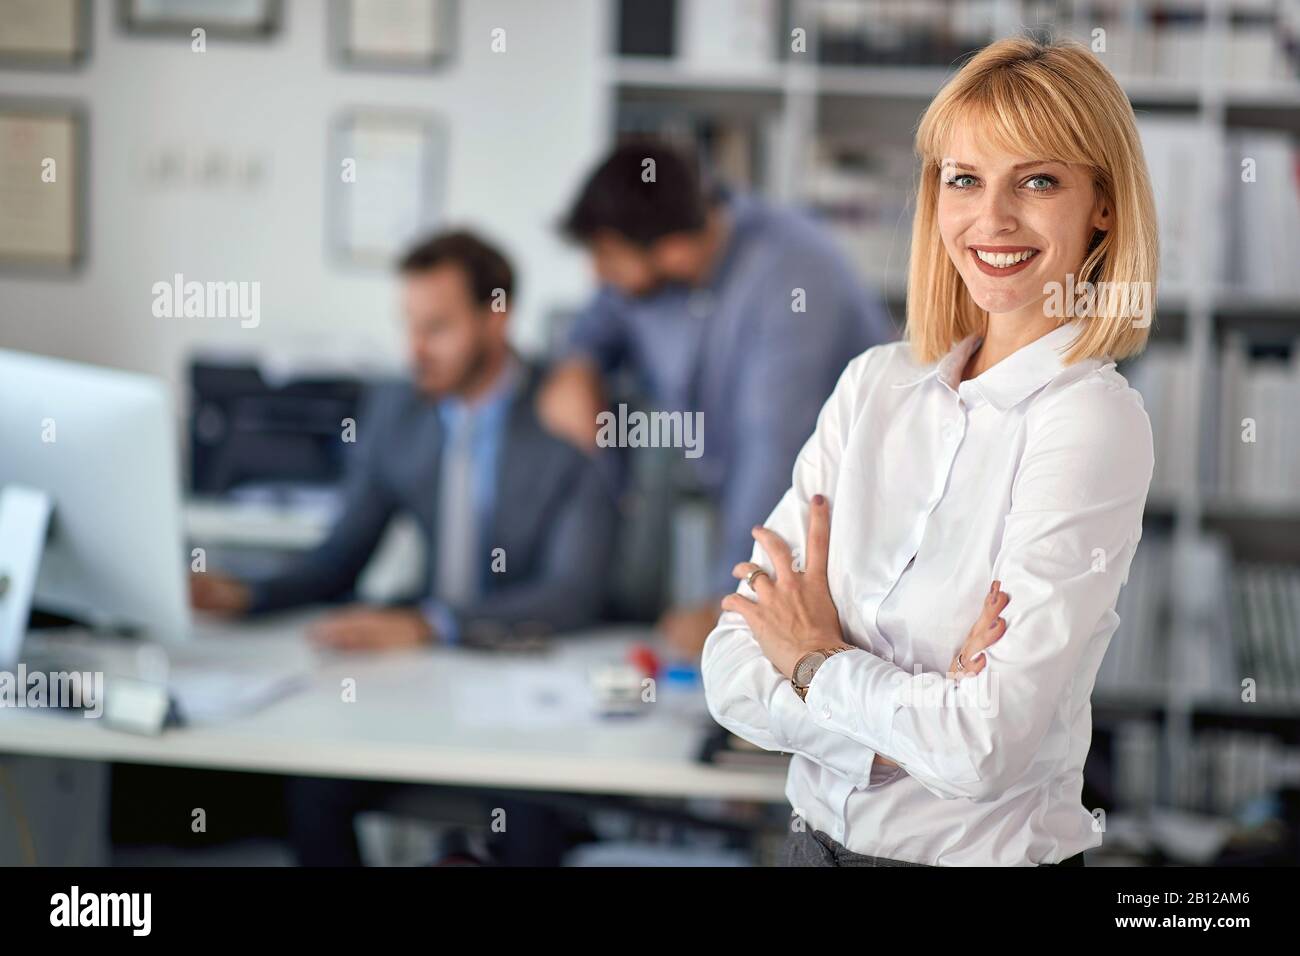 Ritratto di business woman.Smiling donna godendo di successo al lavoro. Foto Stock